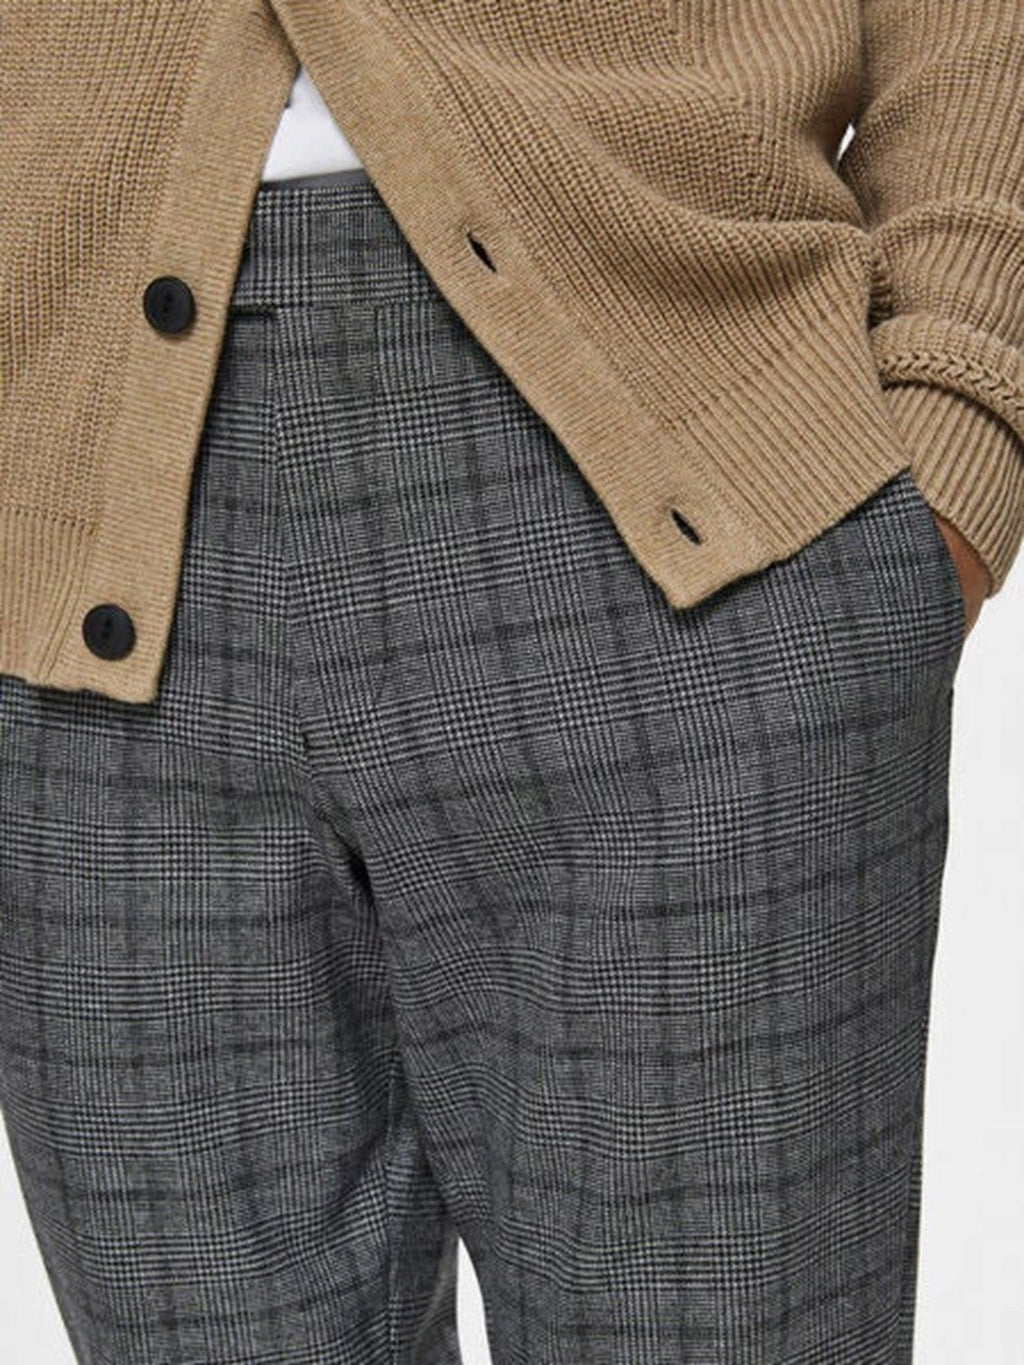 Performance Premium Pants - Dark gray (checkered)